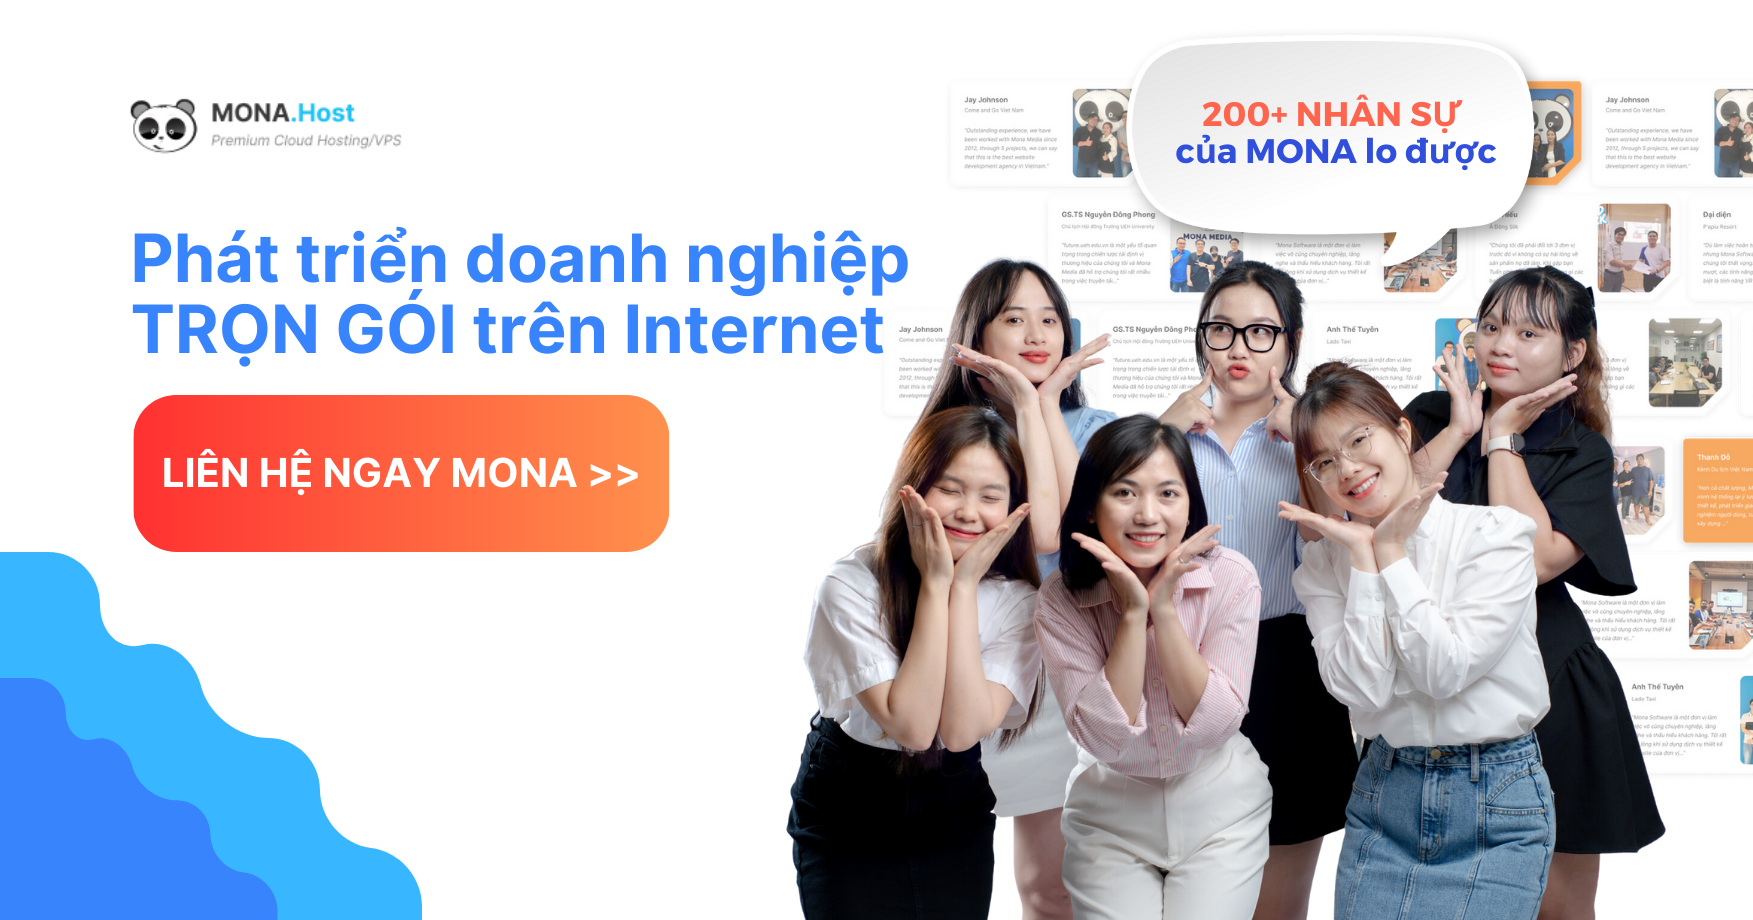 Mona cung cấp dịch vụ tối ưu website giúp doanh nghiệp phát triển hơn